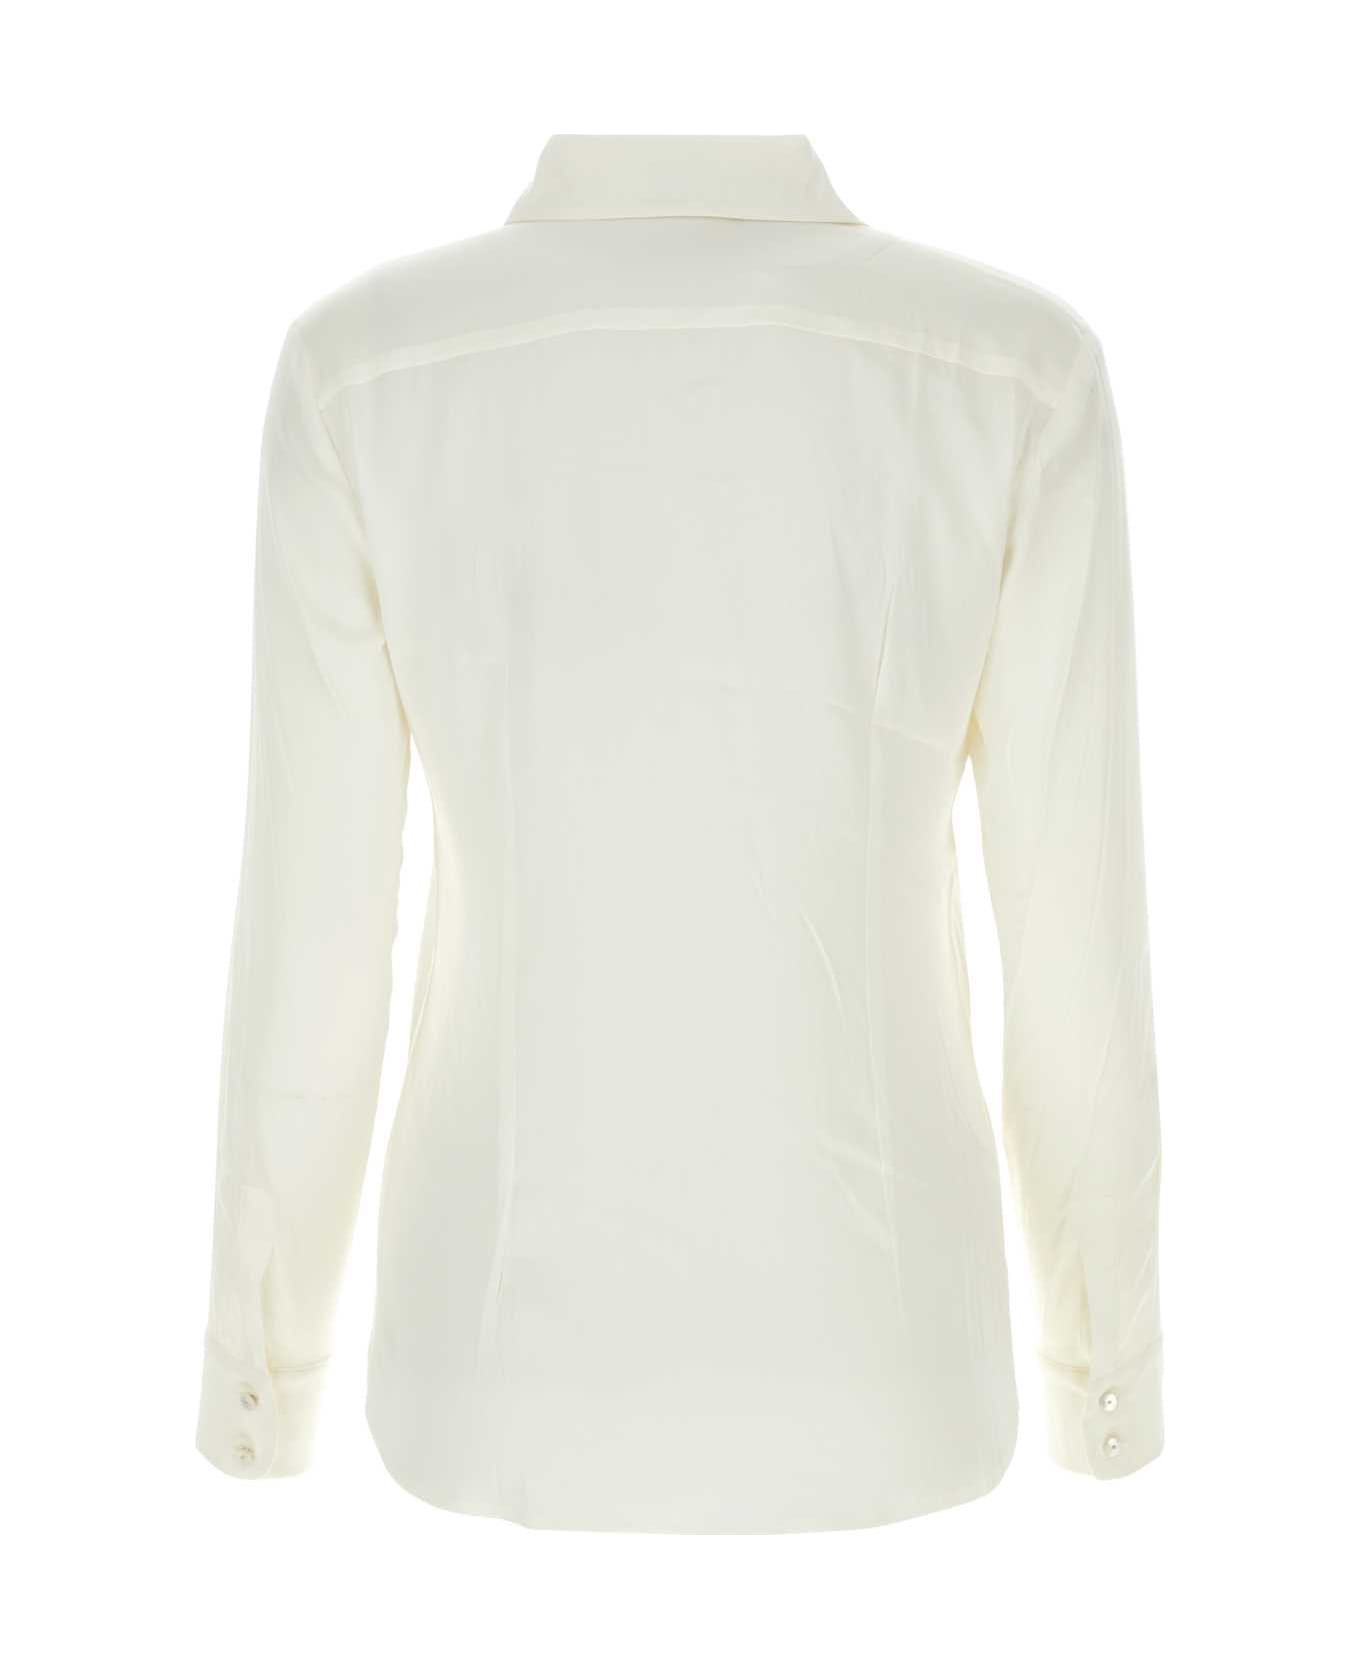 Max Mara Studio White Stretch Silk Shirt - 001